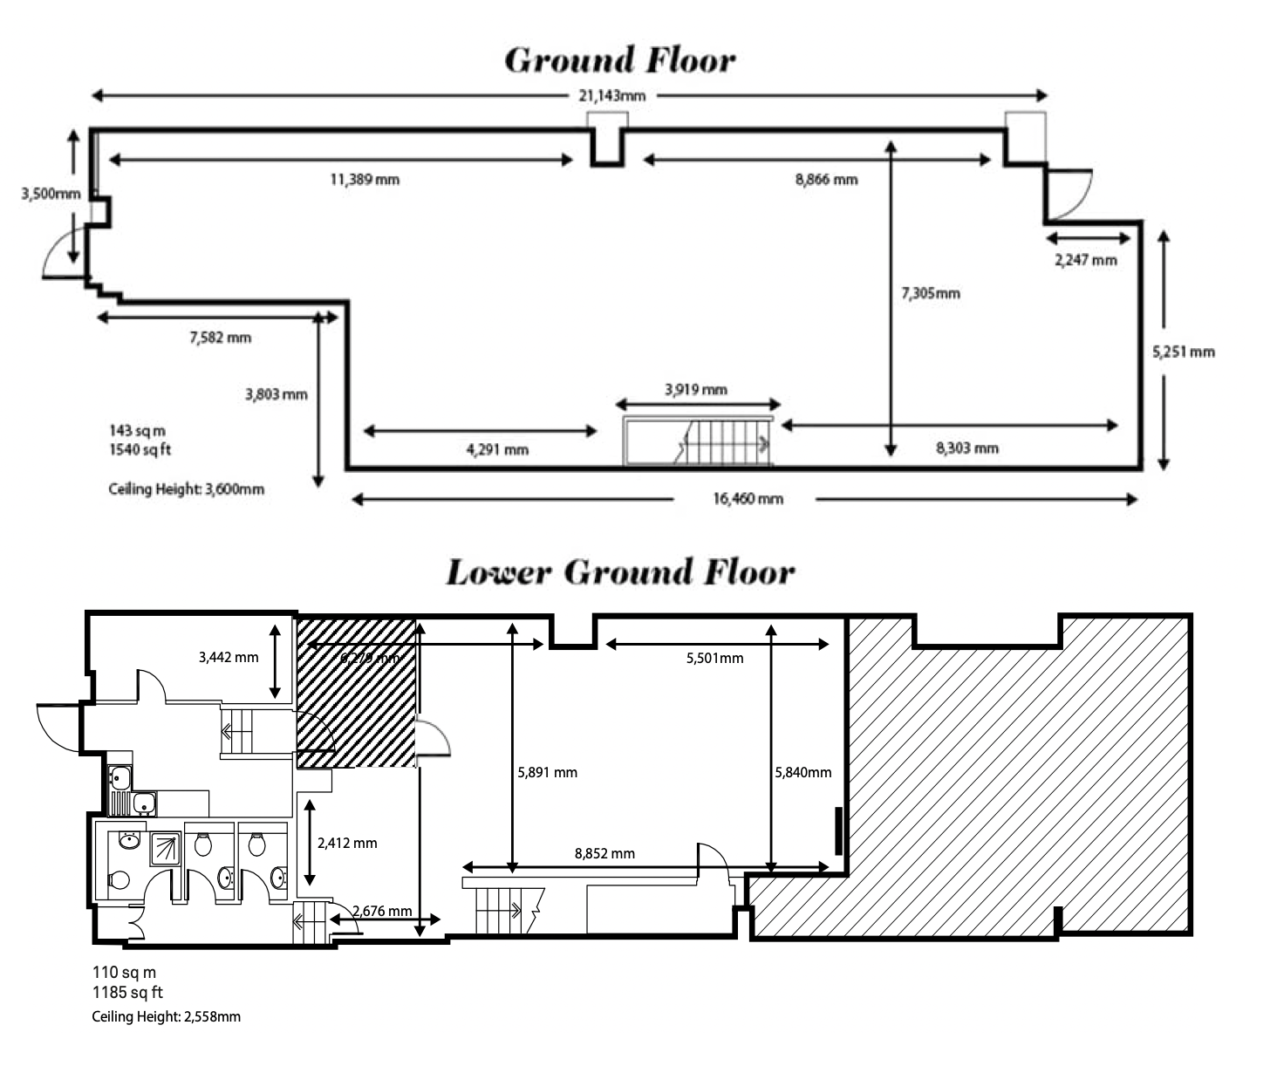 Next Door floor plan